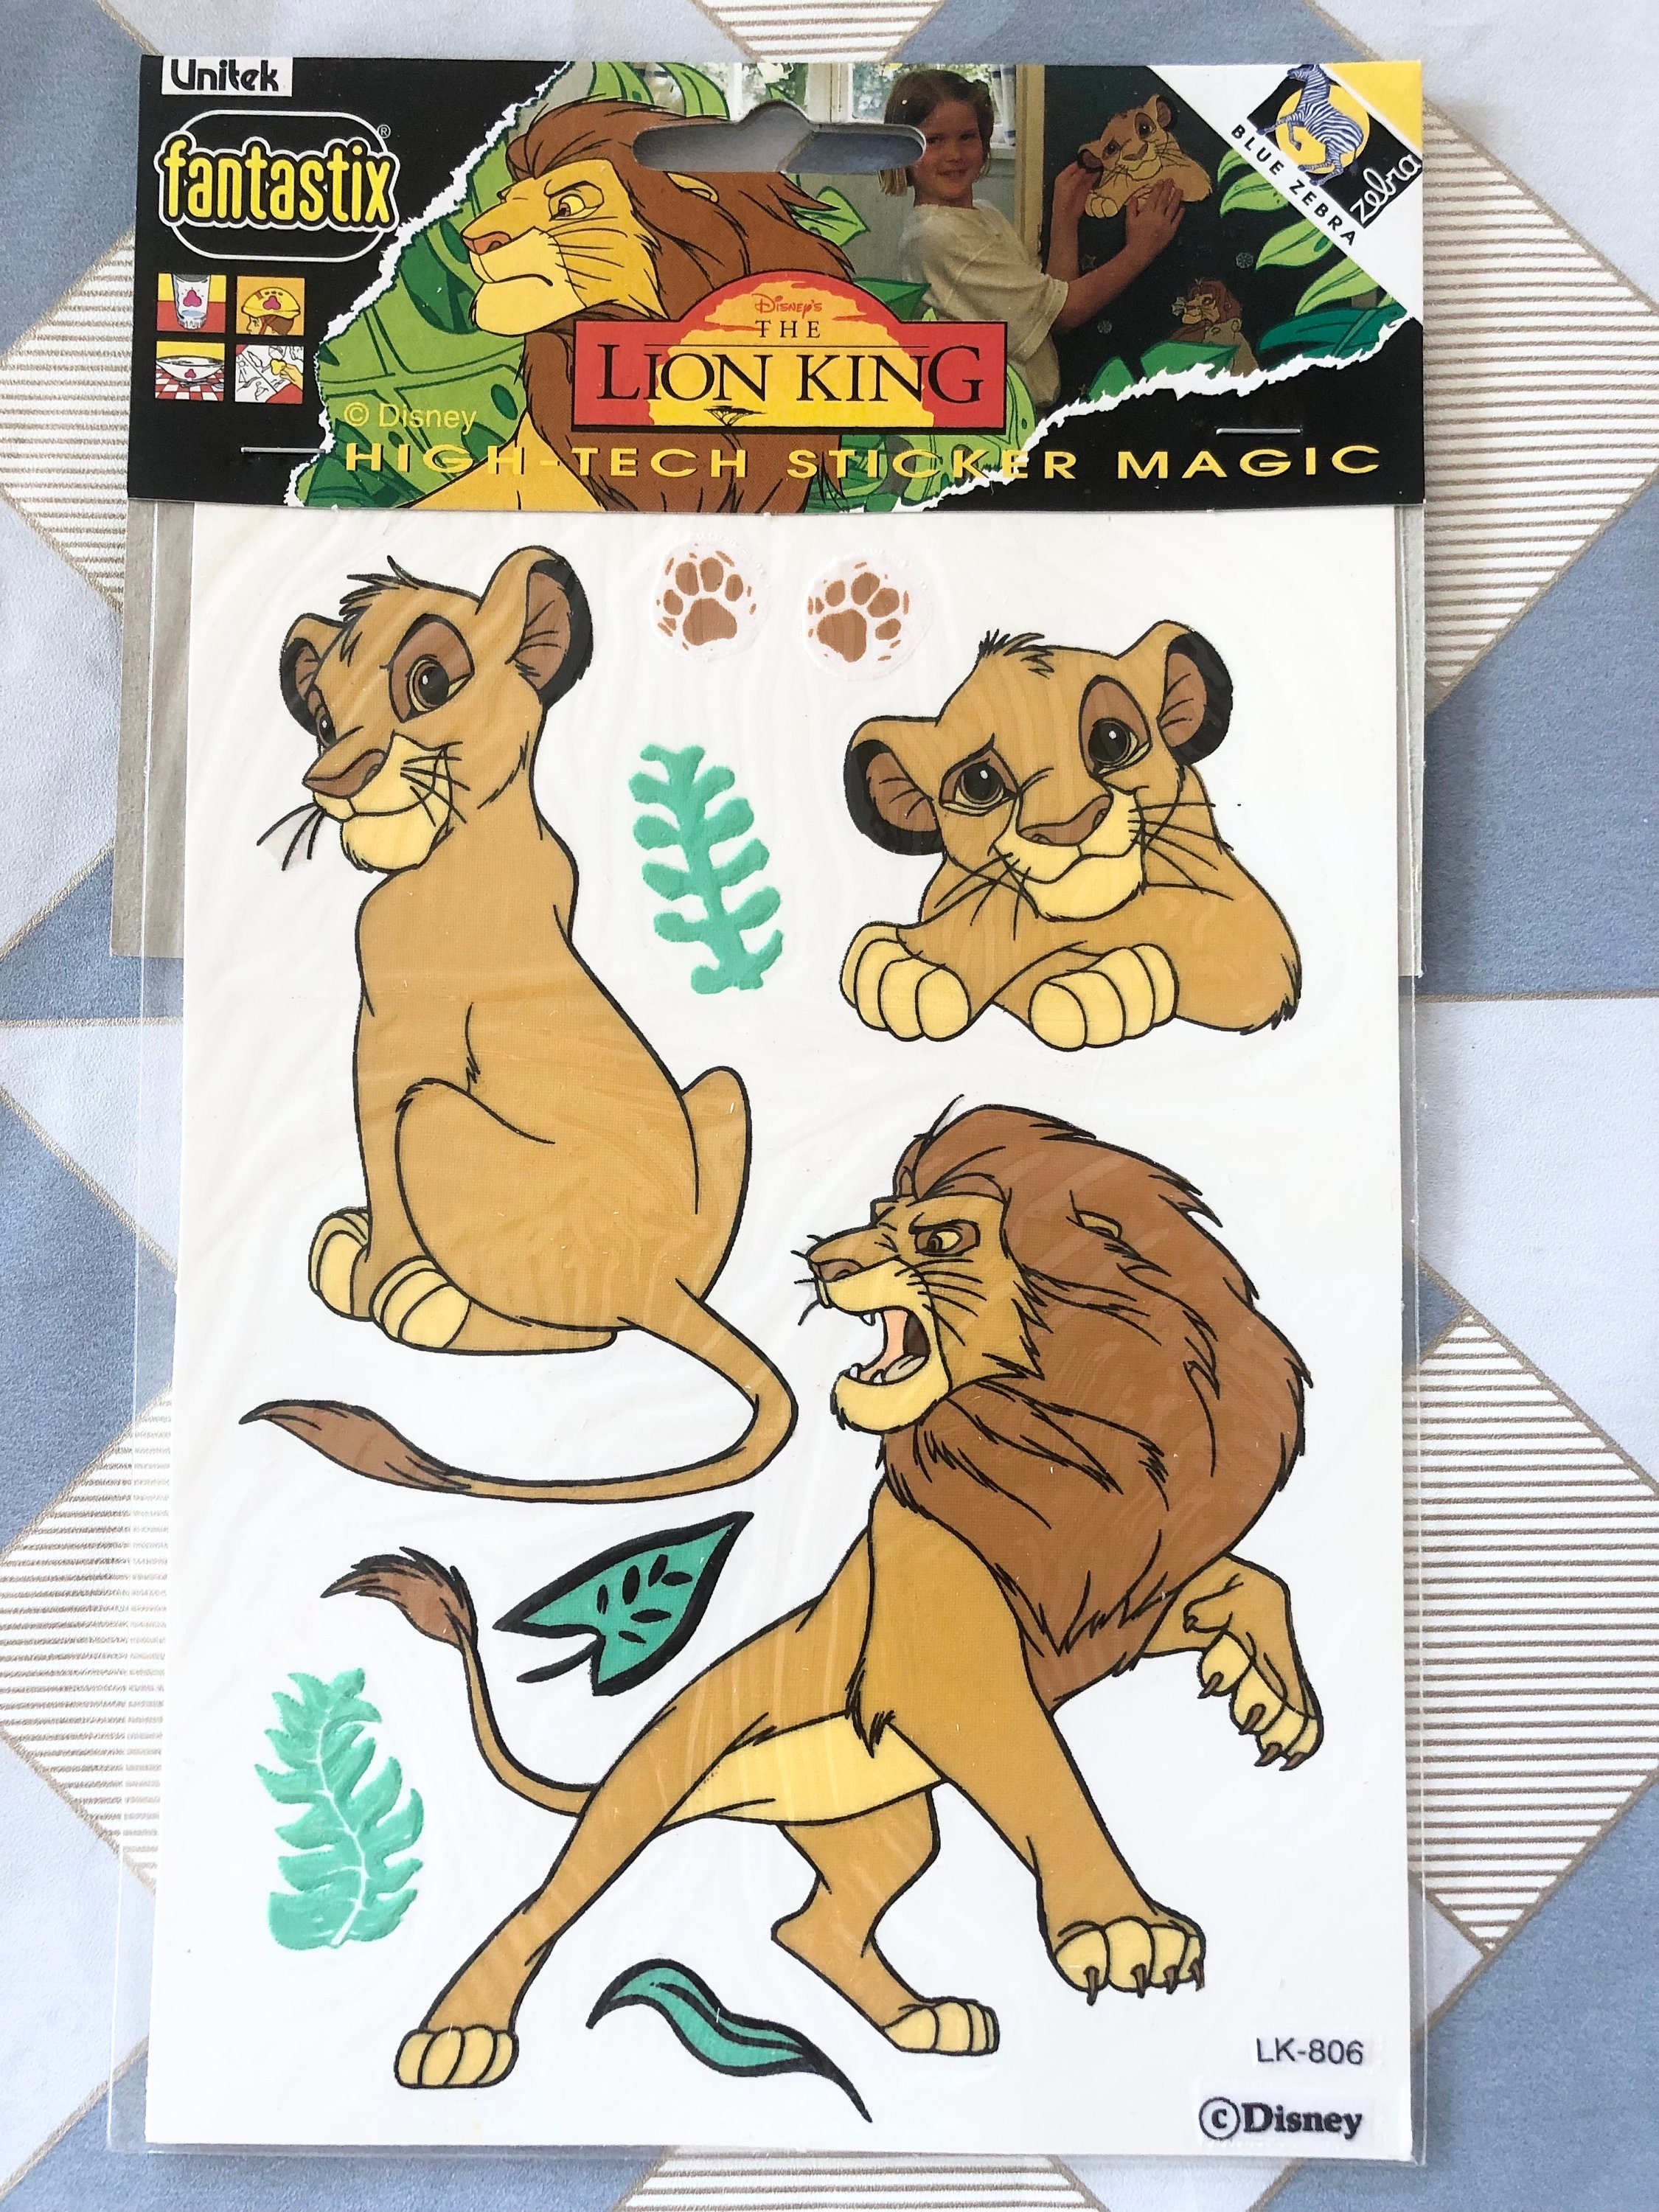 Roi Lion Art Décor Personnalisé Nom Cartoons Vinyle Autocollant Simba  Nursery Wall Decor Stickers Muraux Pour Chambres D'Enfants Peinture Murale  B608